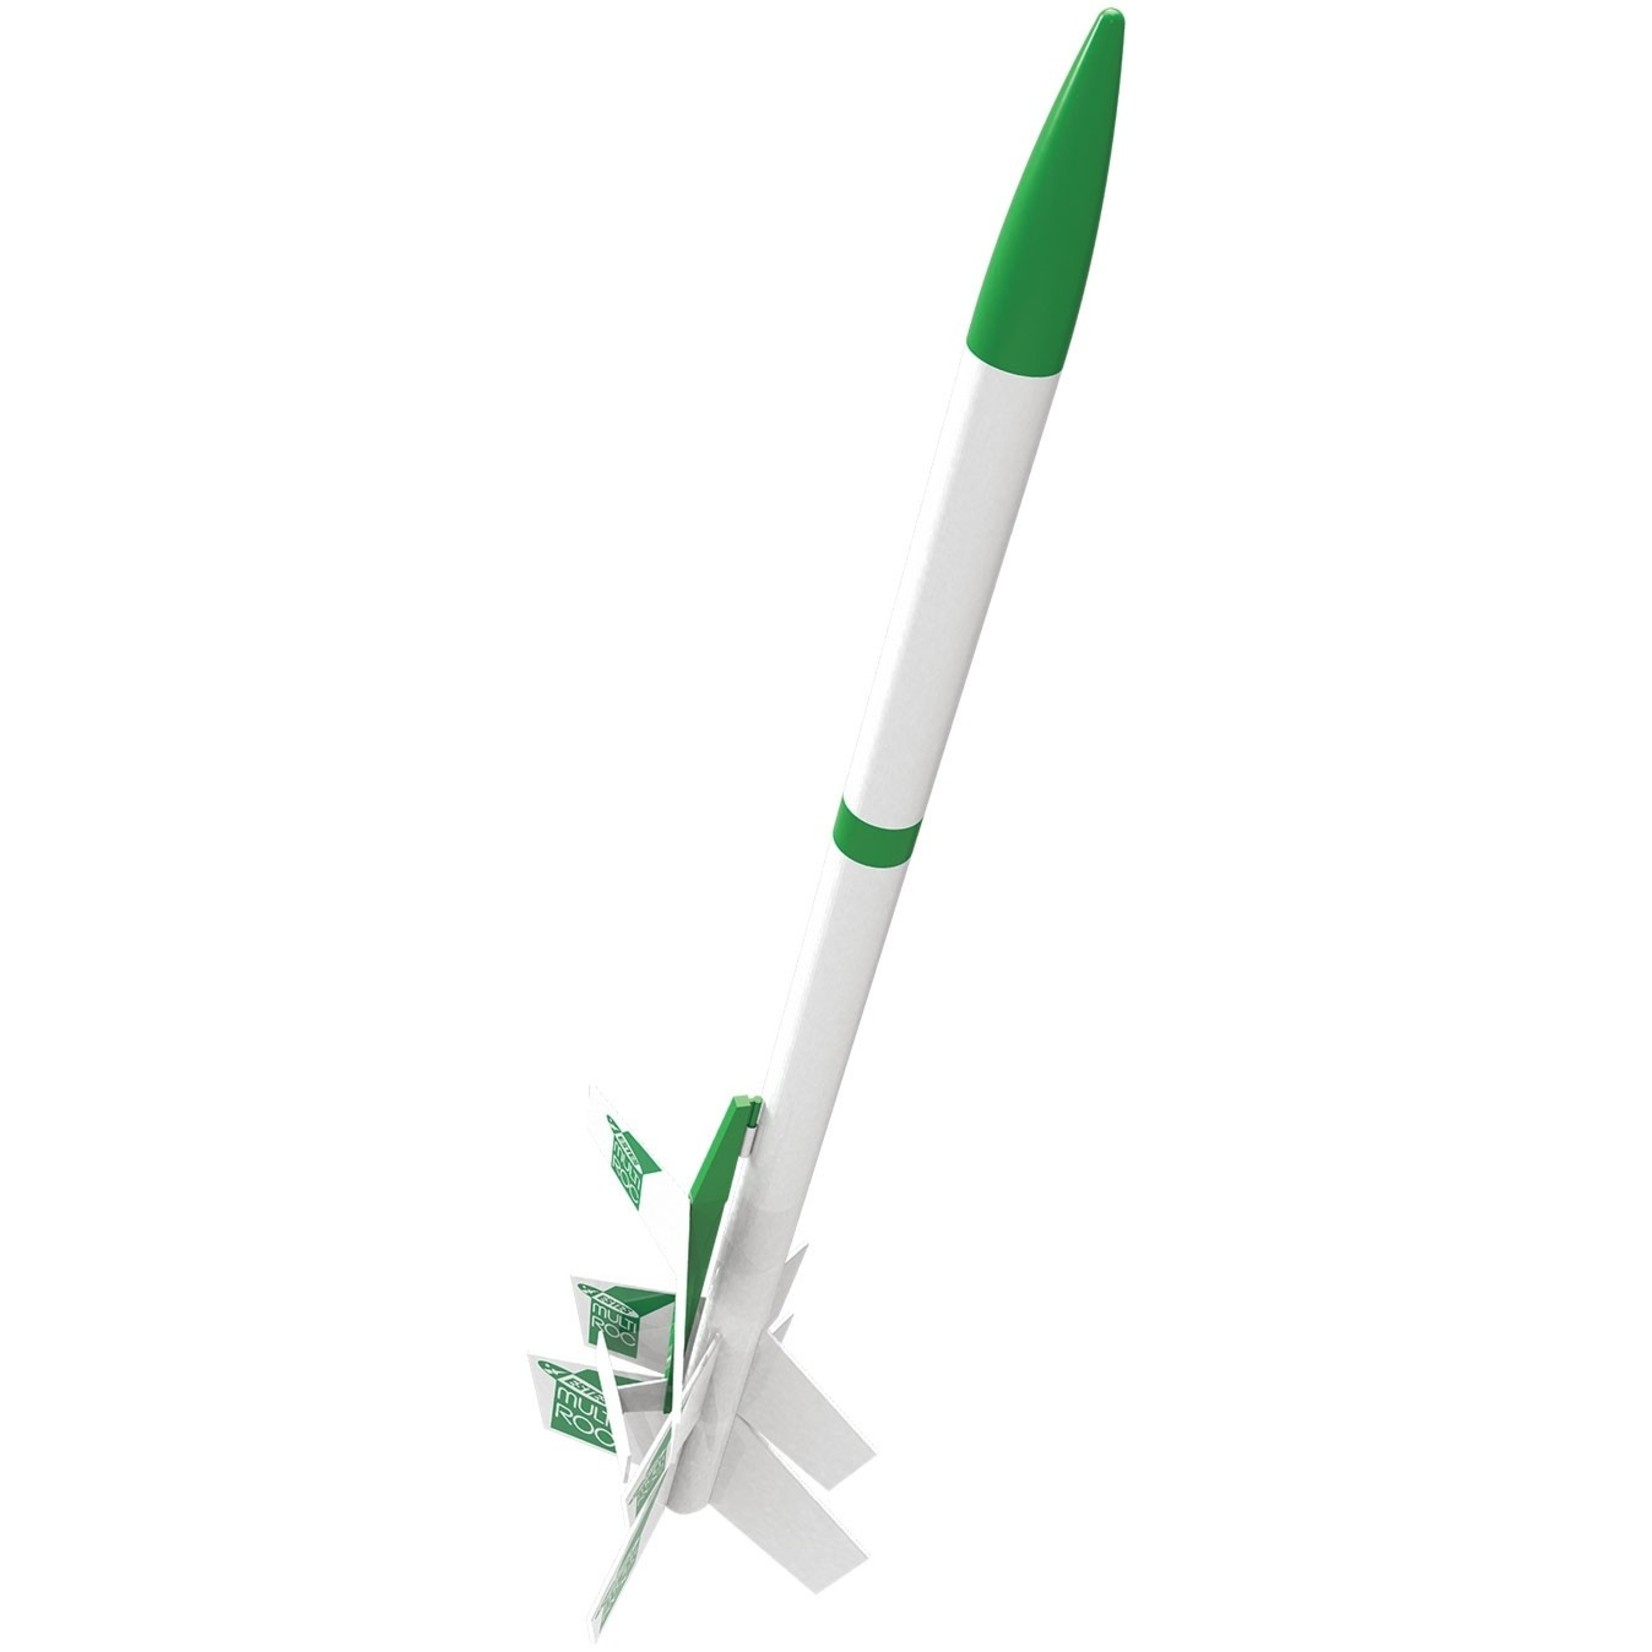 Estes Rockets EST1329  Multi-Roc Level 3